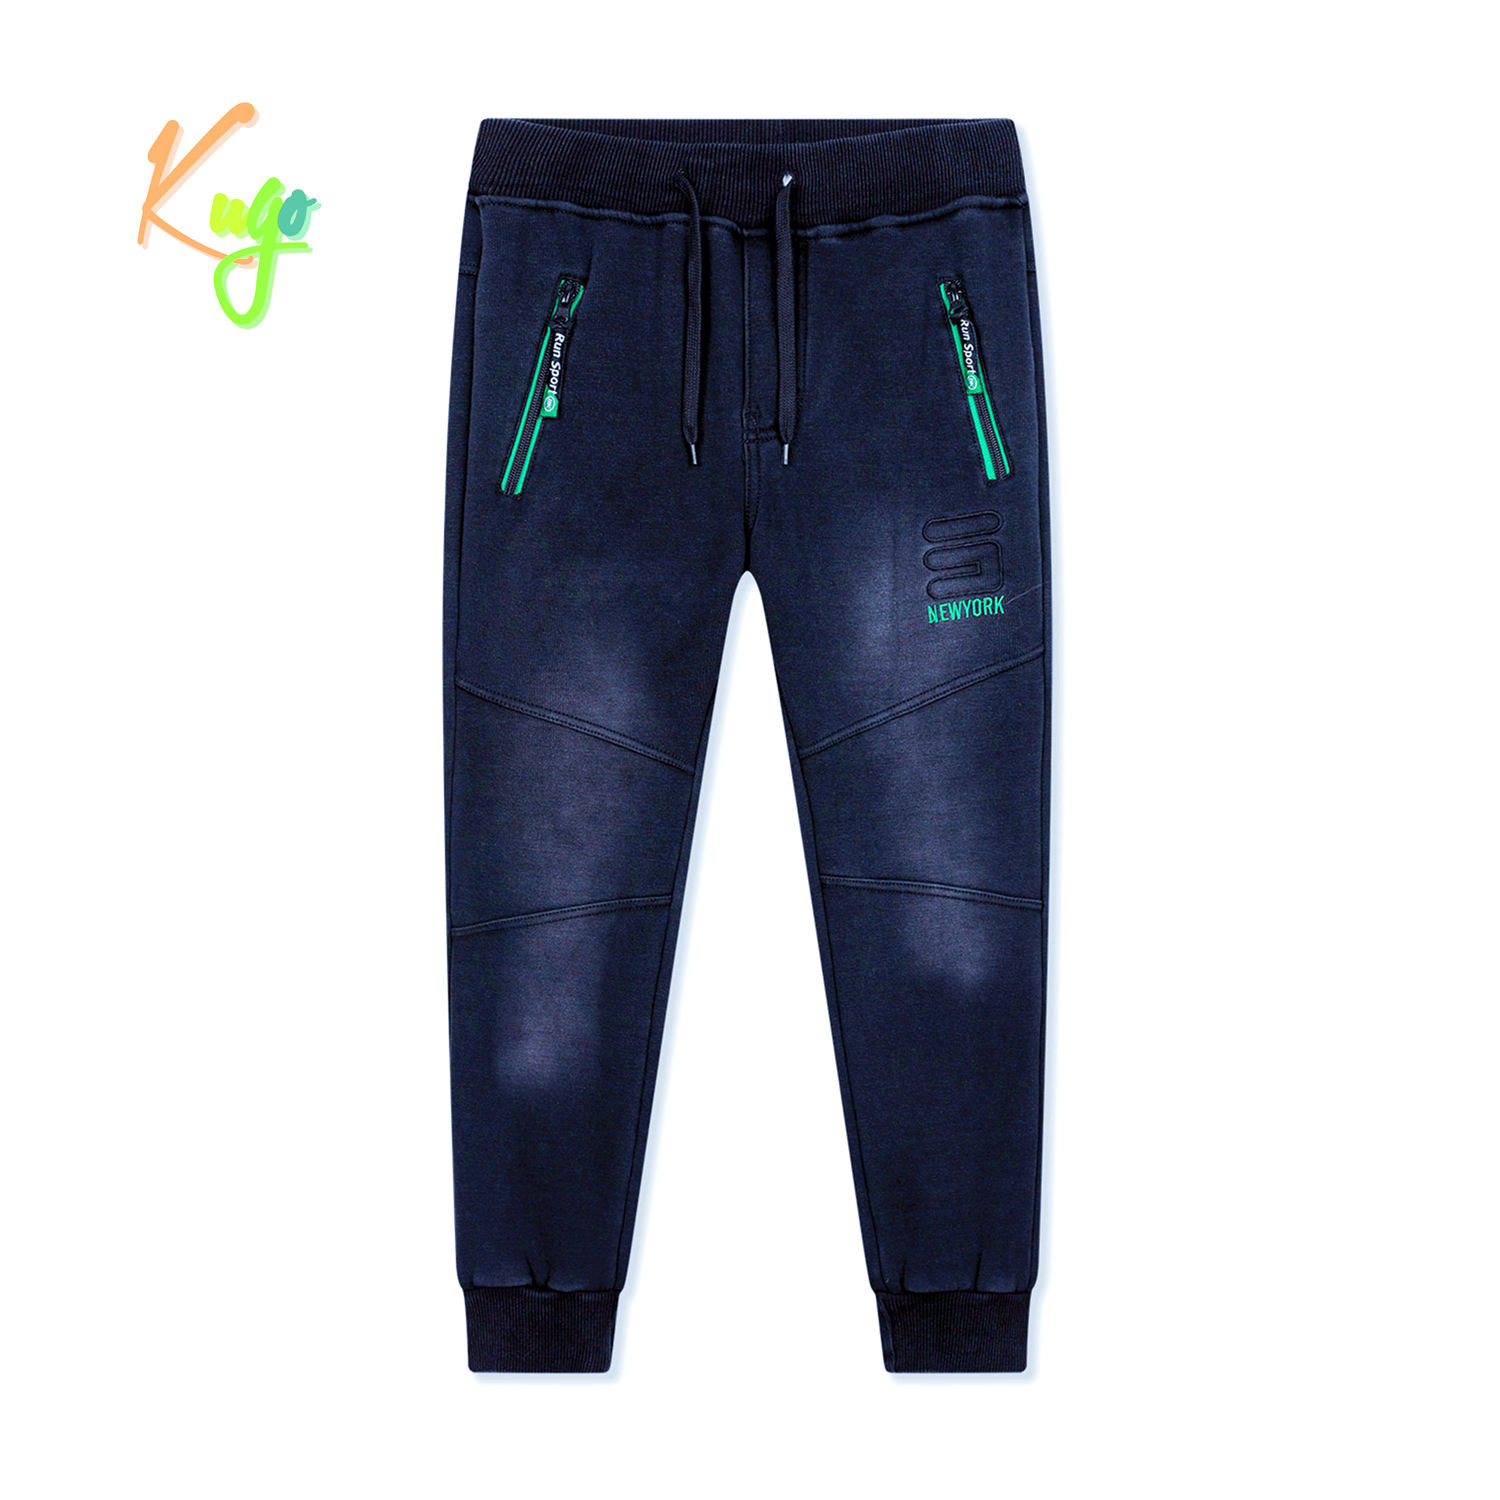 Chlapecké riflové kalhoty/ tepláky, zateplené - KUGO FK0318, modrá Barva: Modrá, Velikost: 140